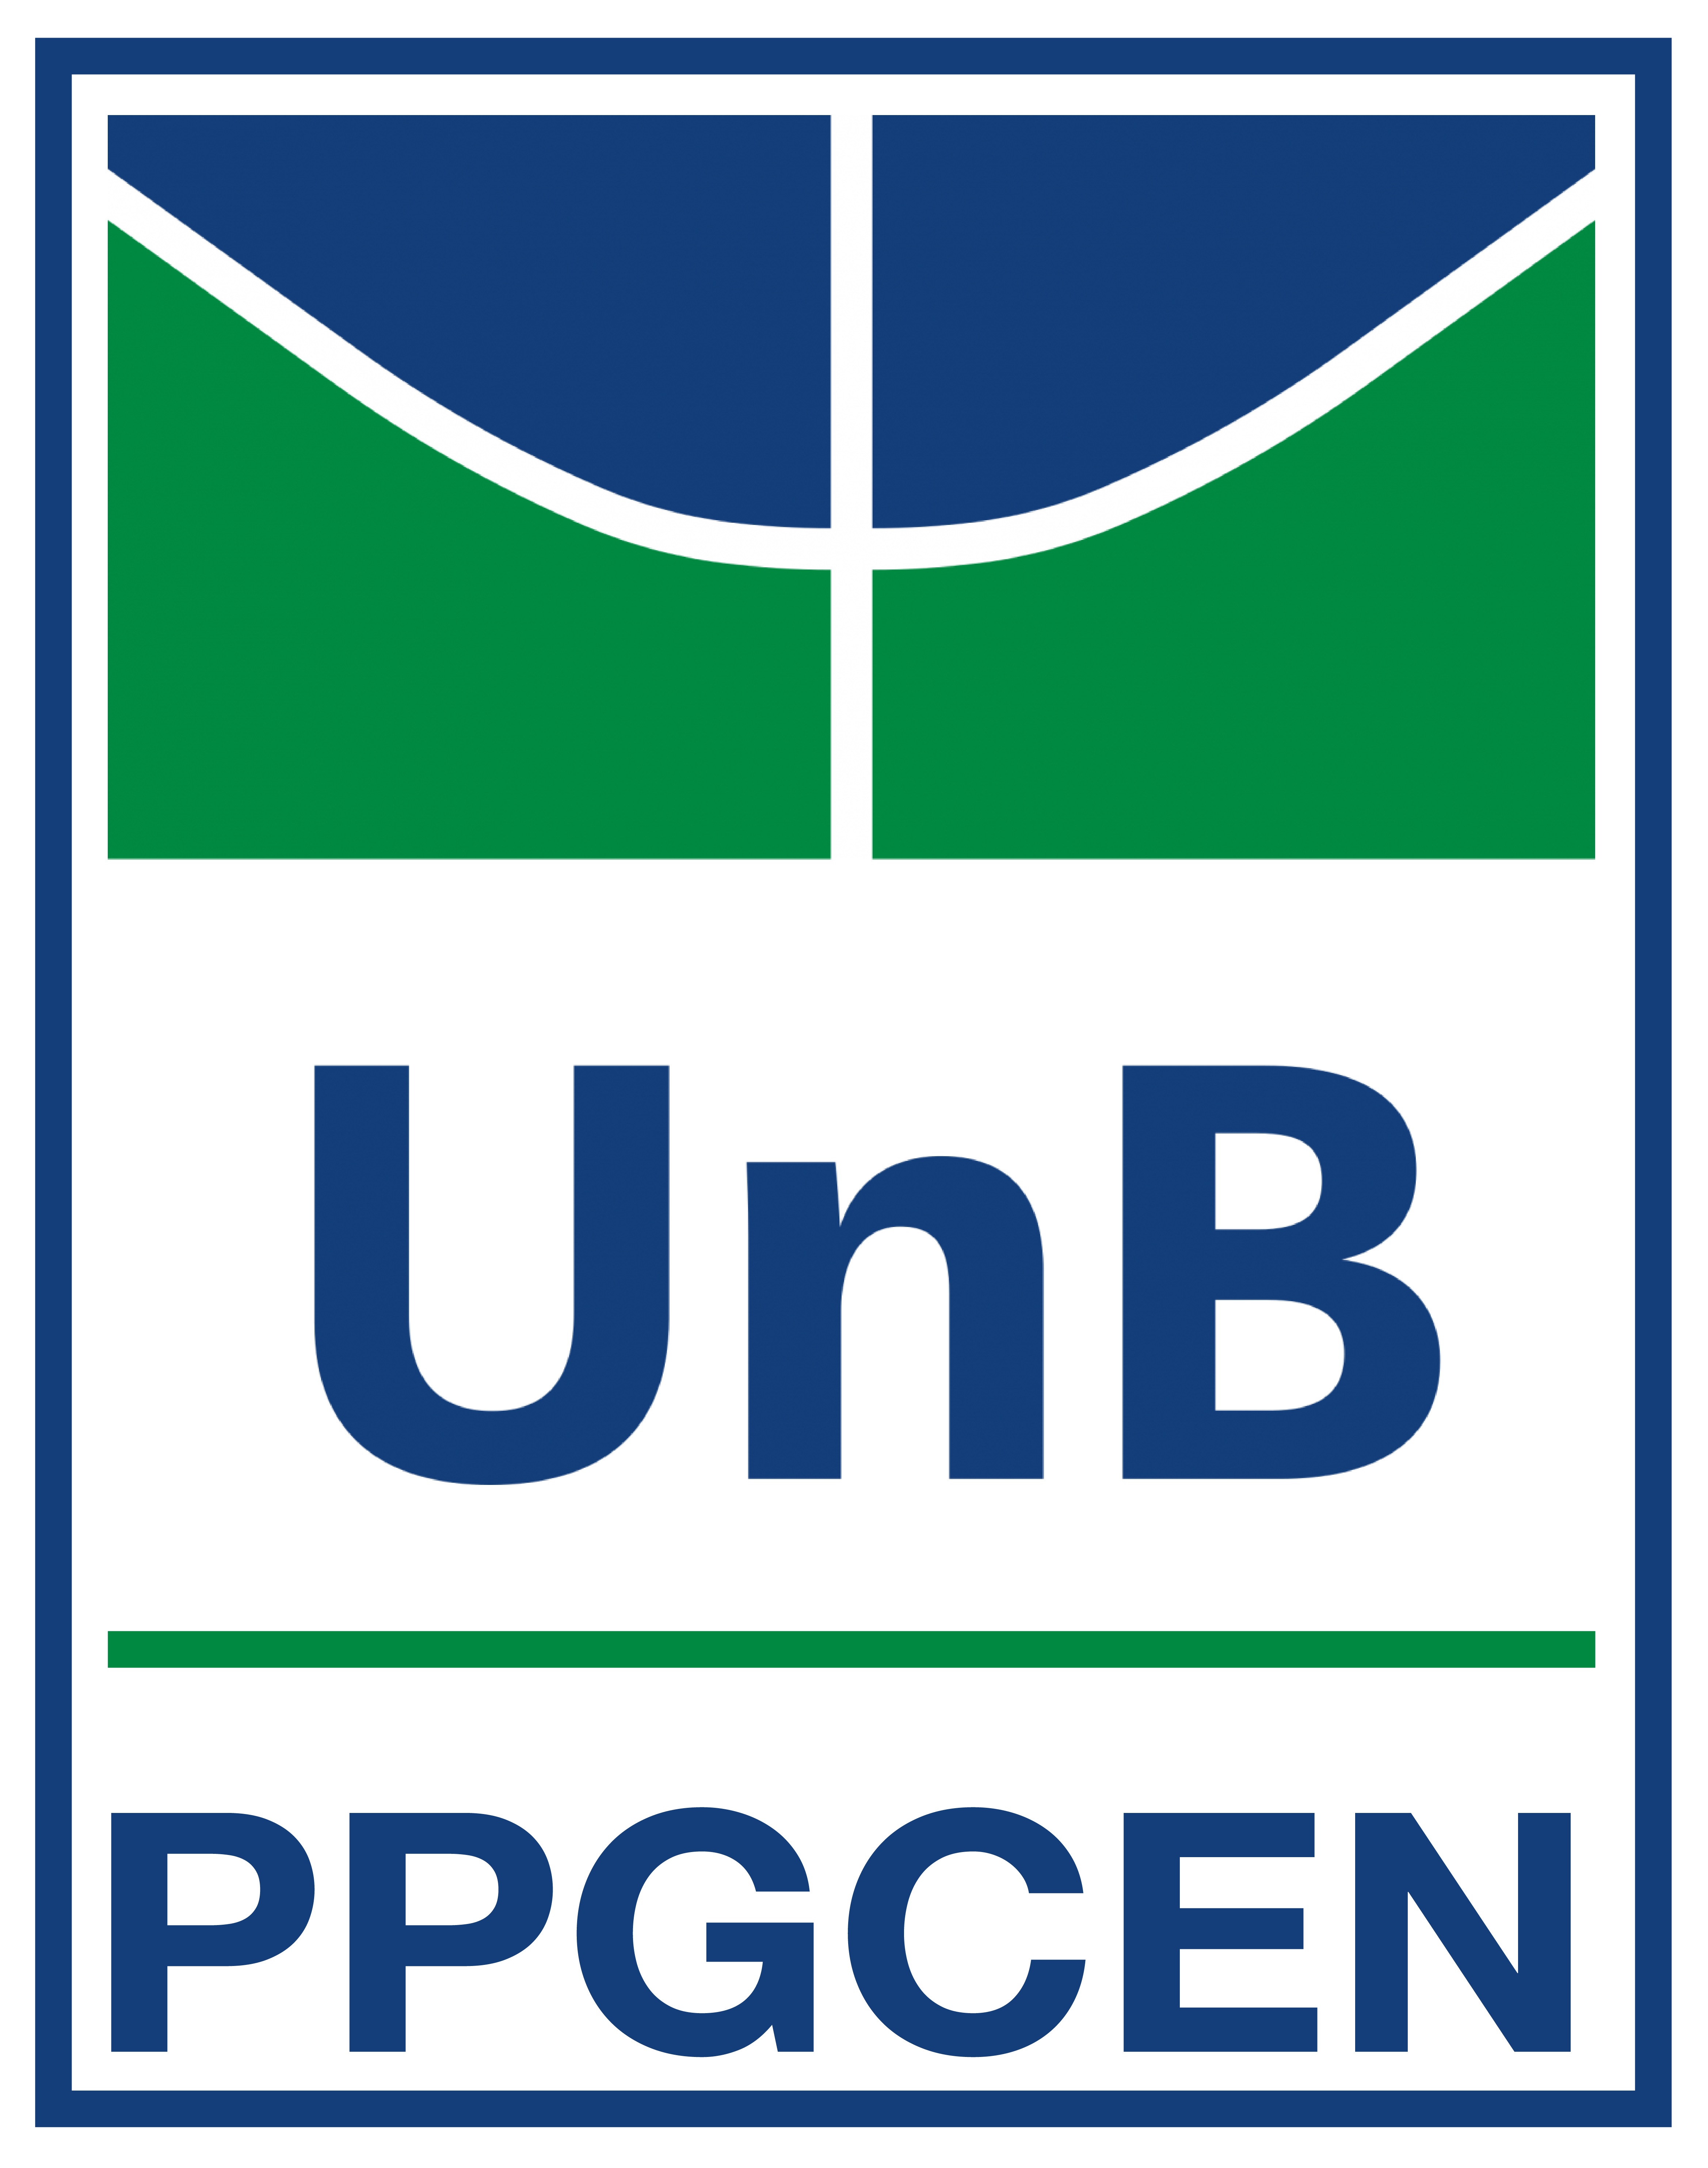 Logo PPG-CEN